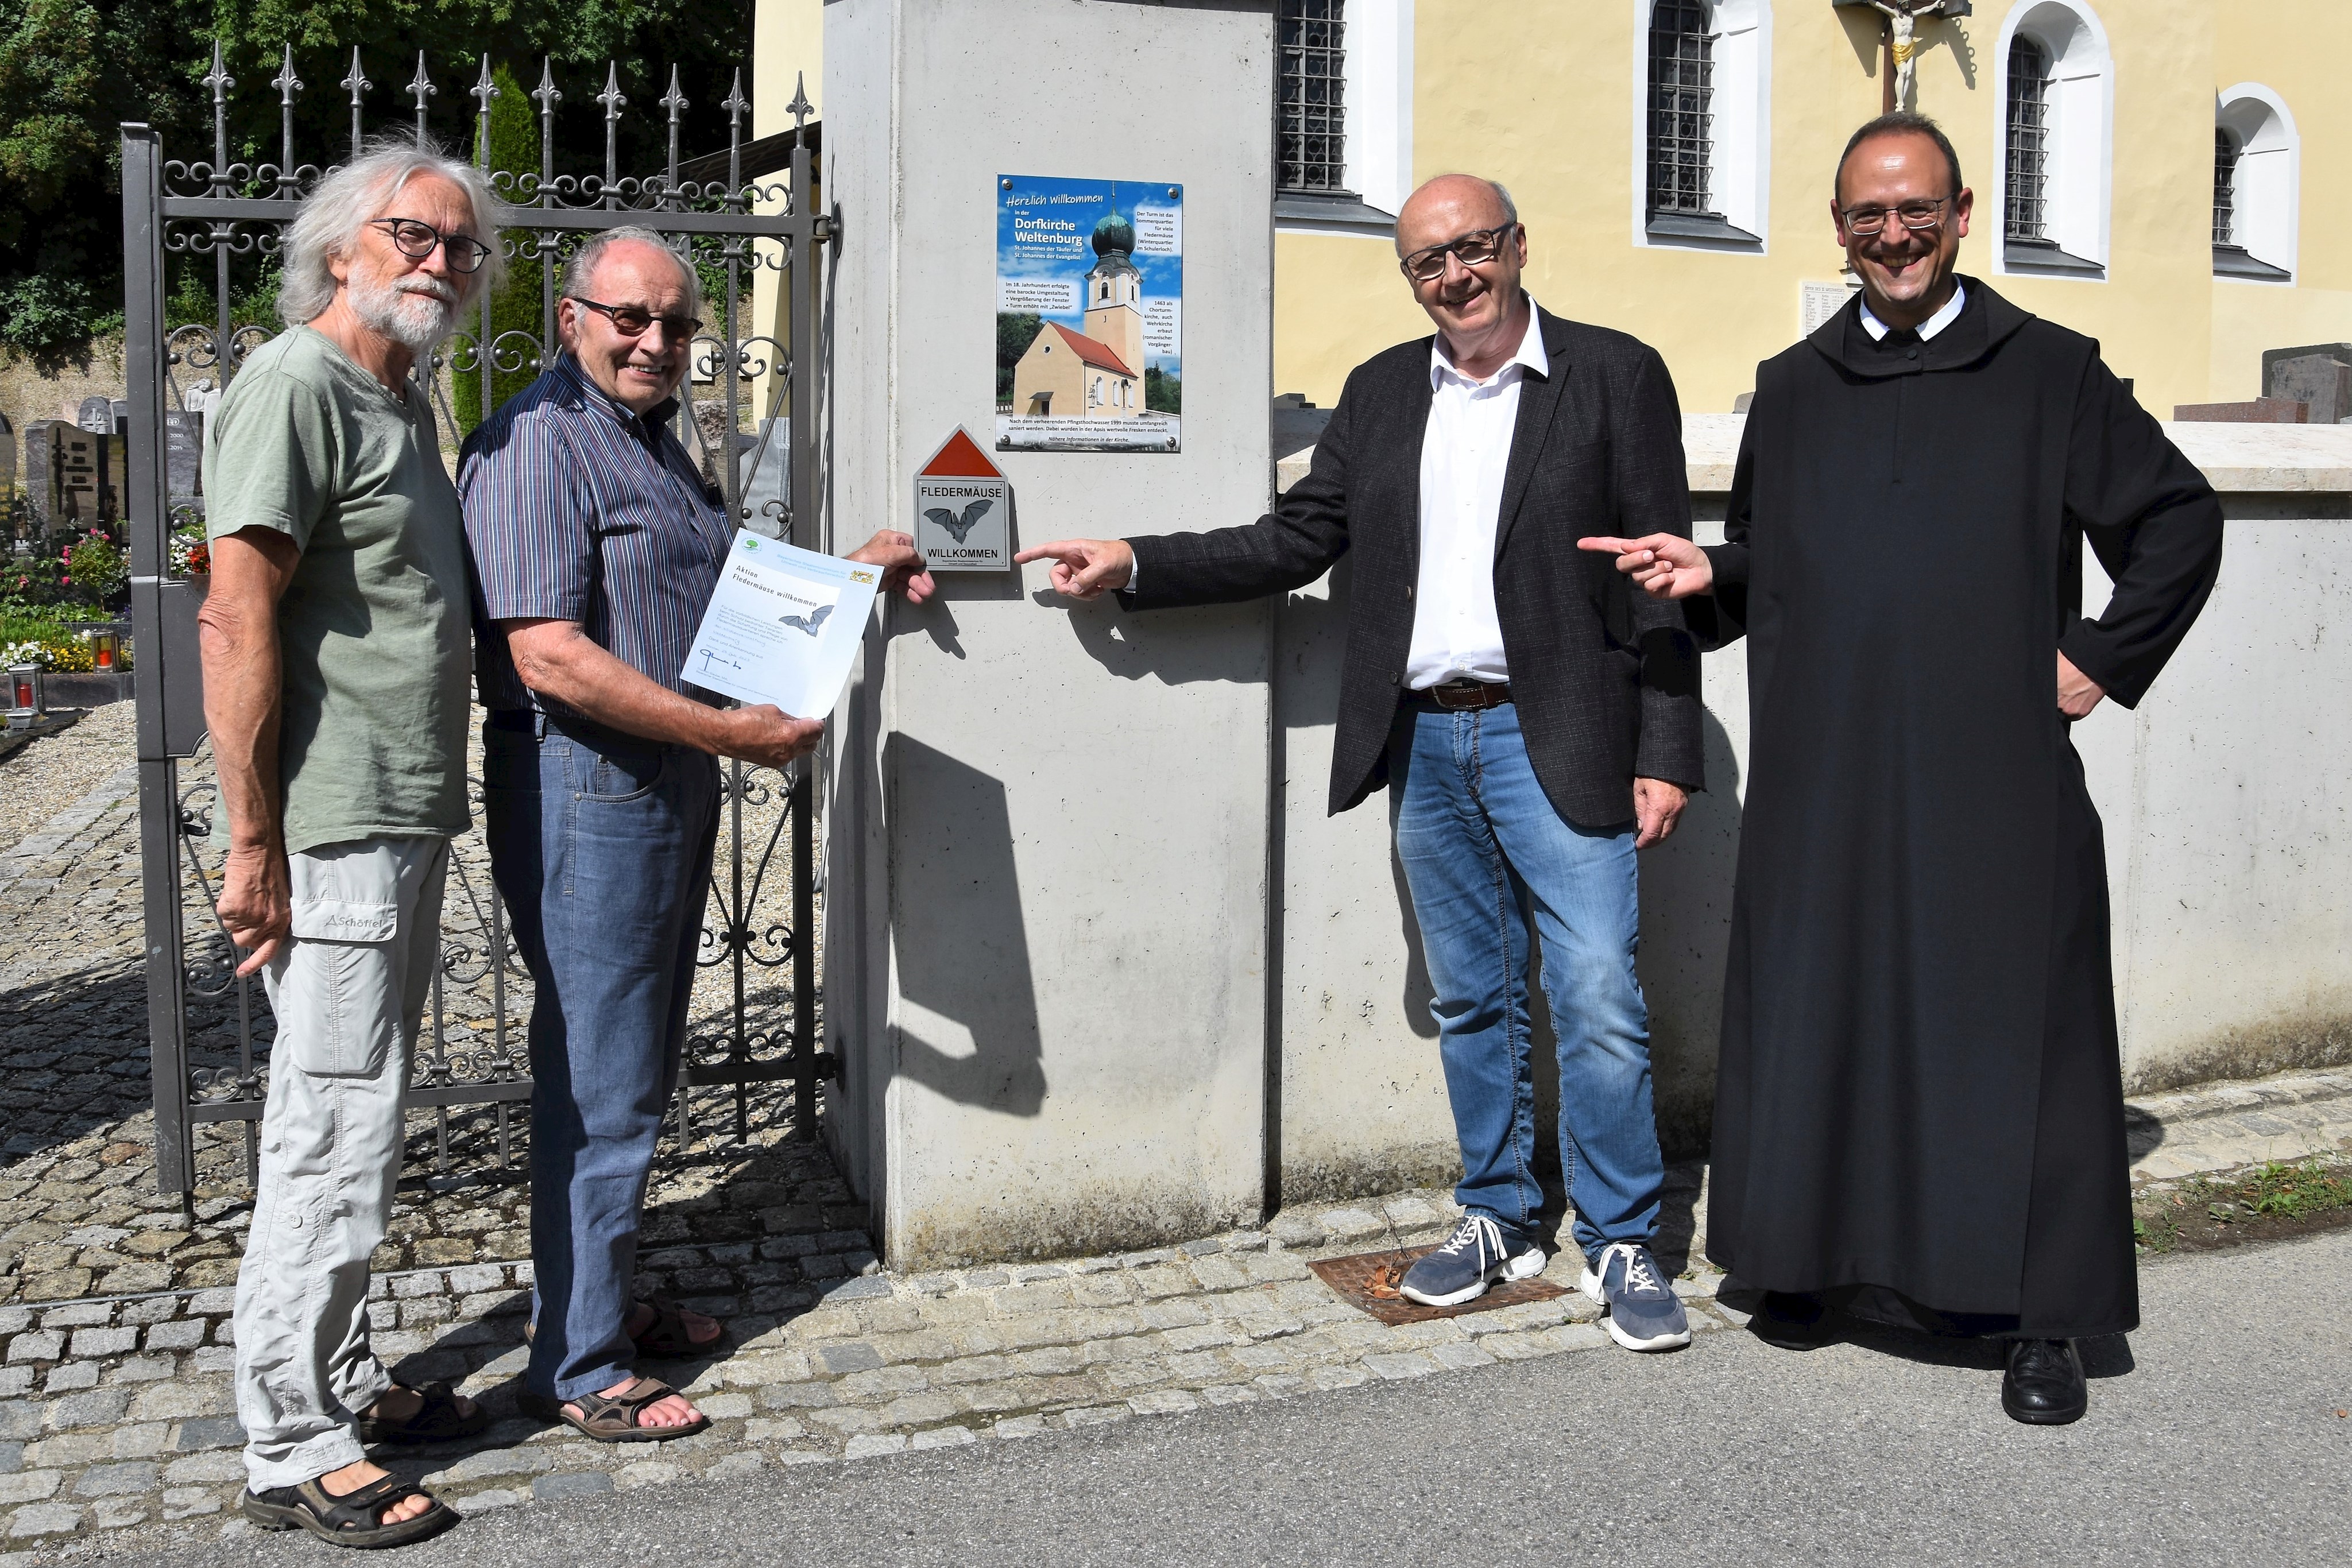 Dorfkirche Weltenburg erhält als erste Kirche im Landkreis die Plakette „Fledermäuse willkommen“